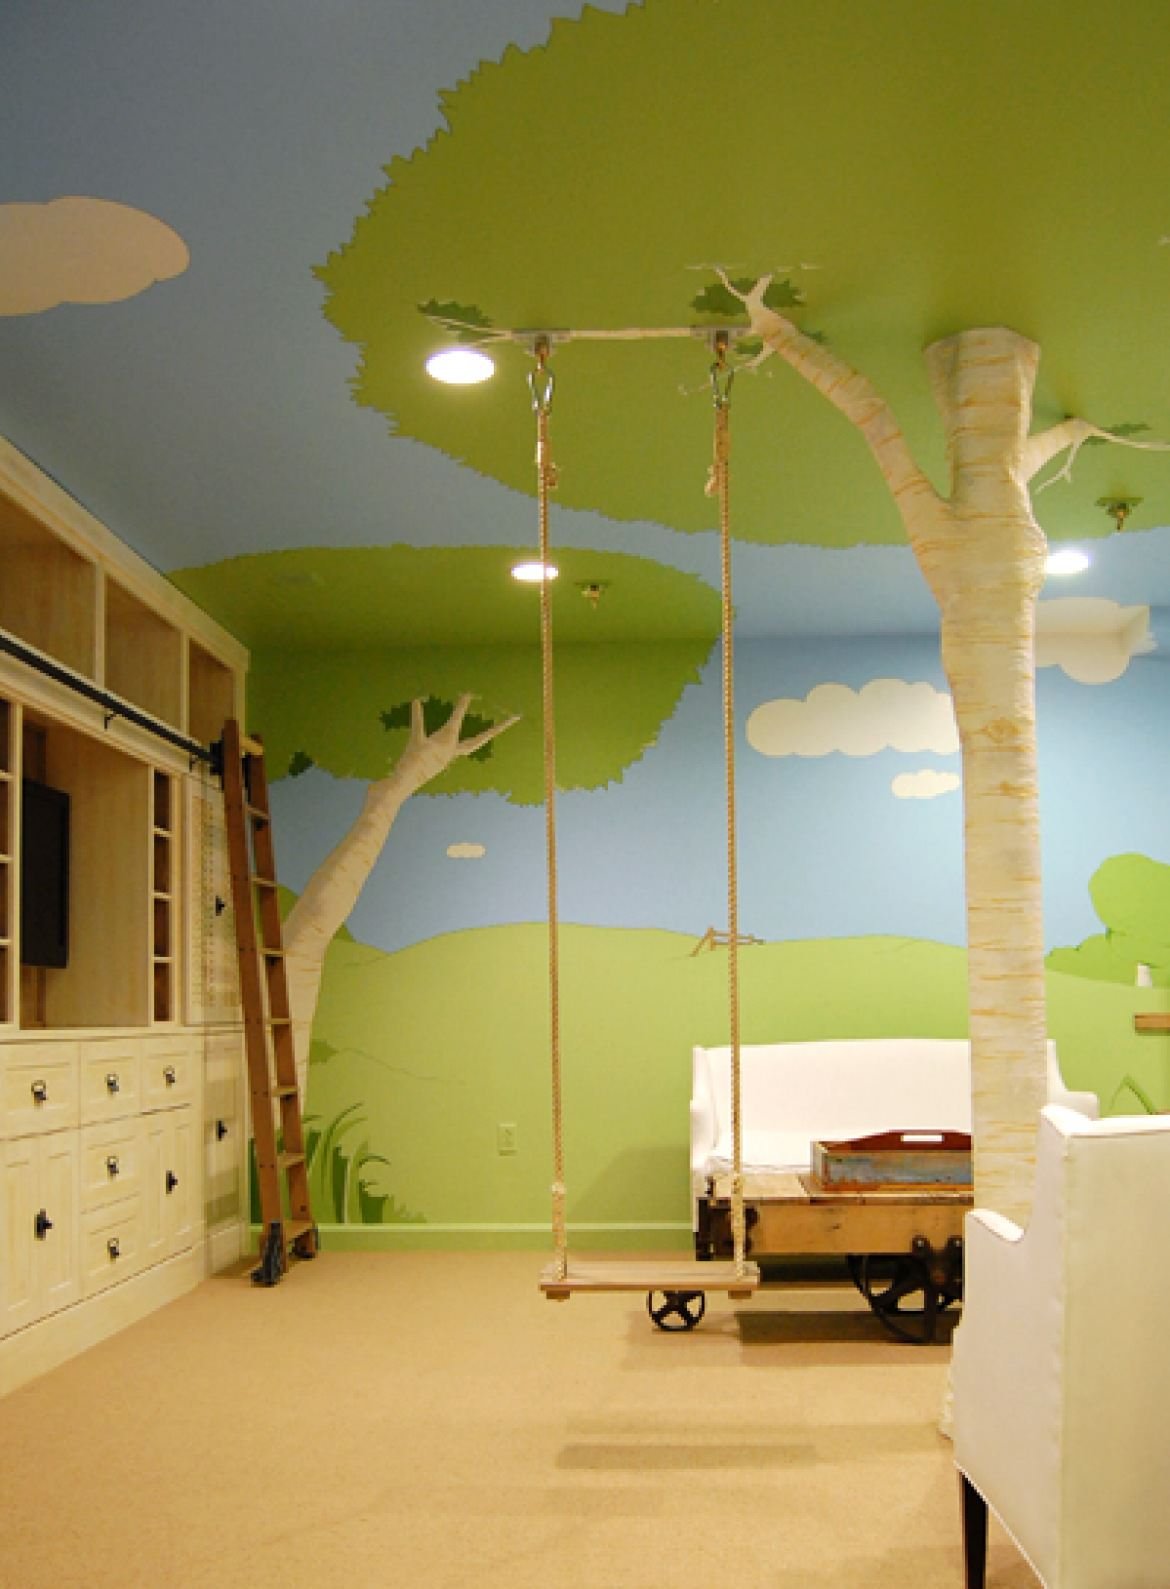 Originale e moderna cameretta per bambini, con altalena,  dipinta con elementi naturali: prato, alberi e cielo. Un vero albero è stato posizionato nella stanza per dare un aspetto più veritiero al contesto